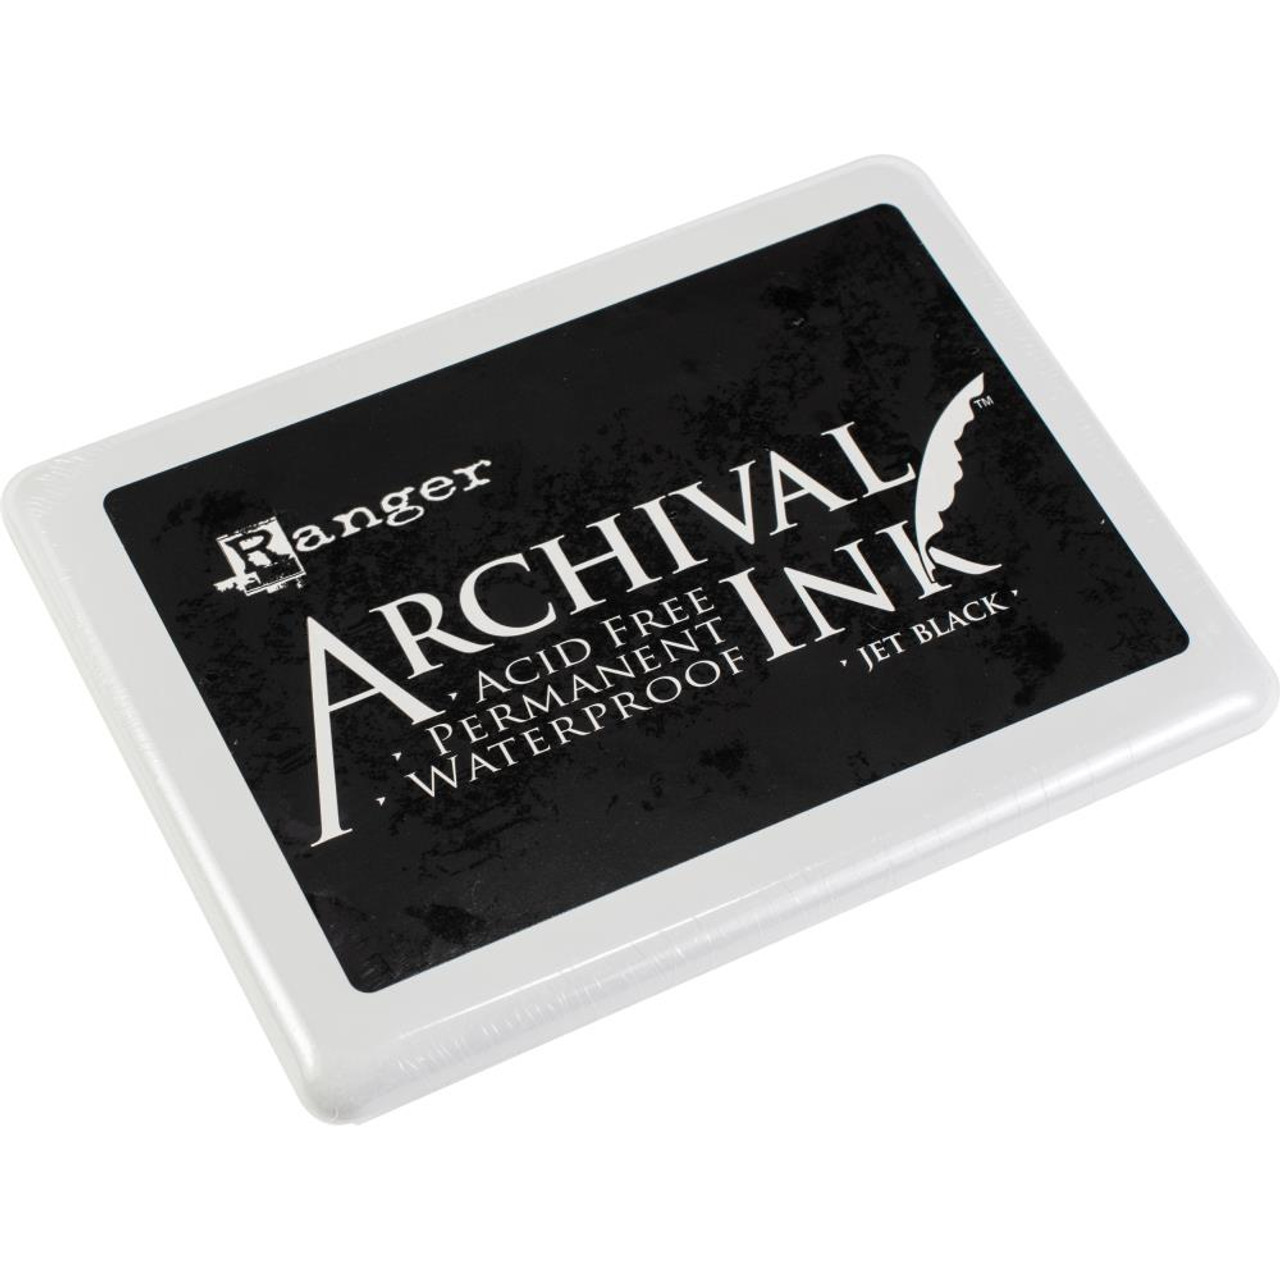 Archival Ink Pads - Aquamarine